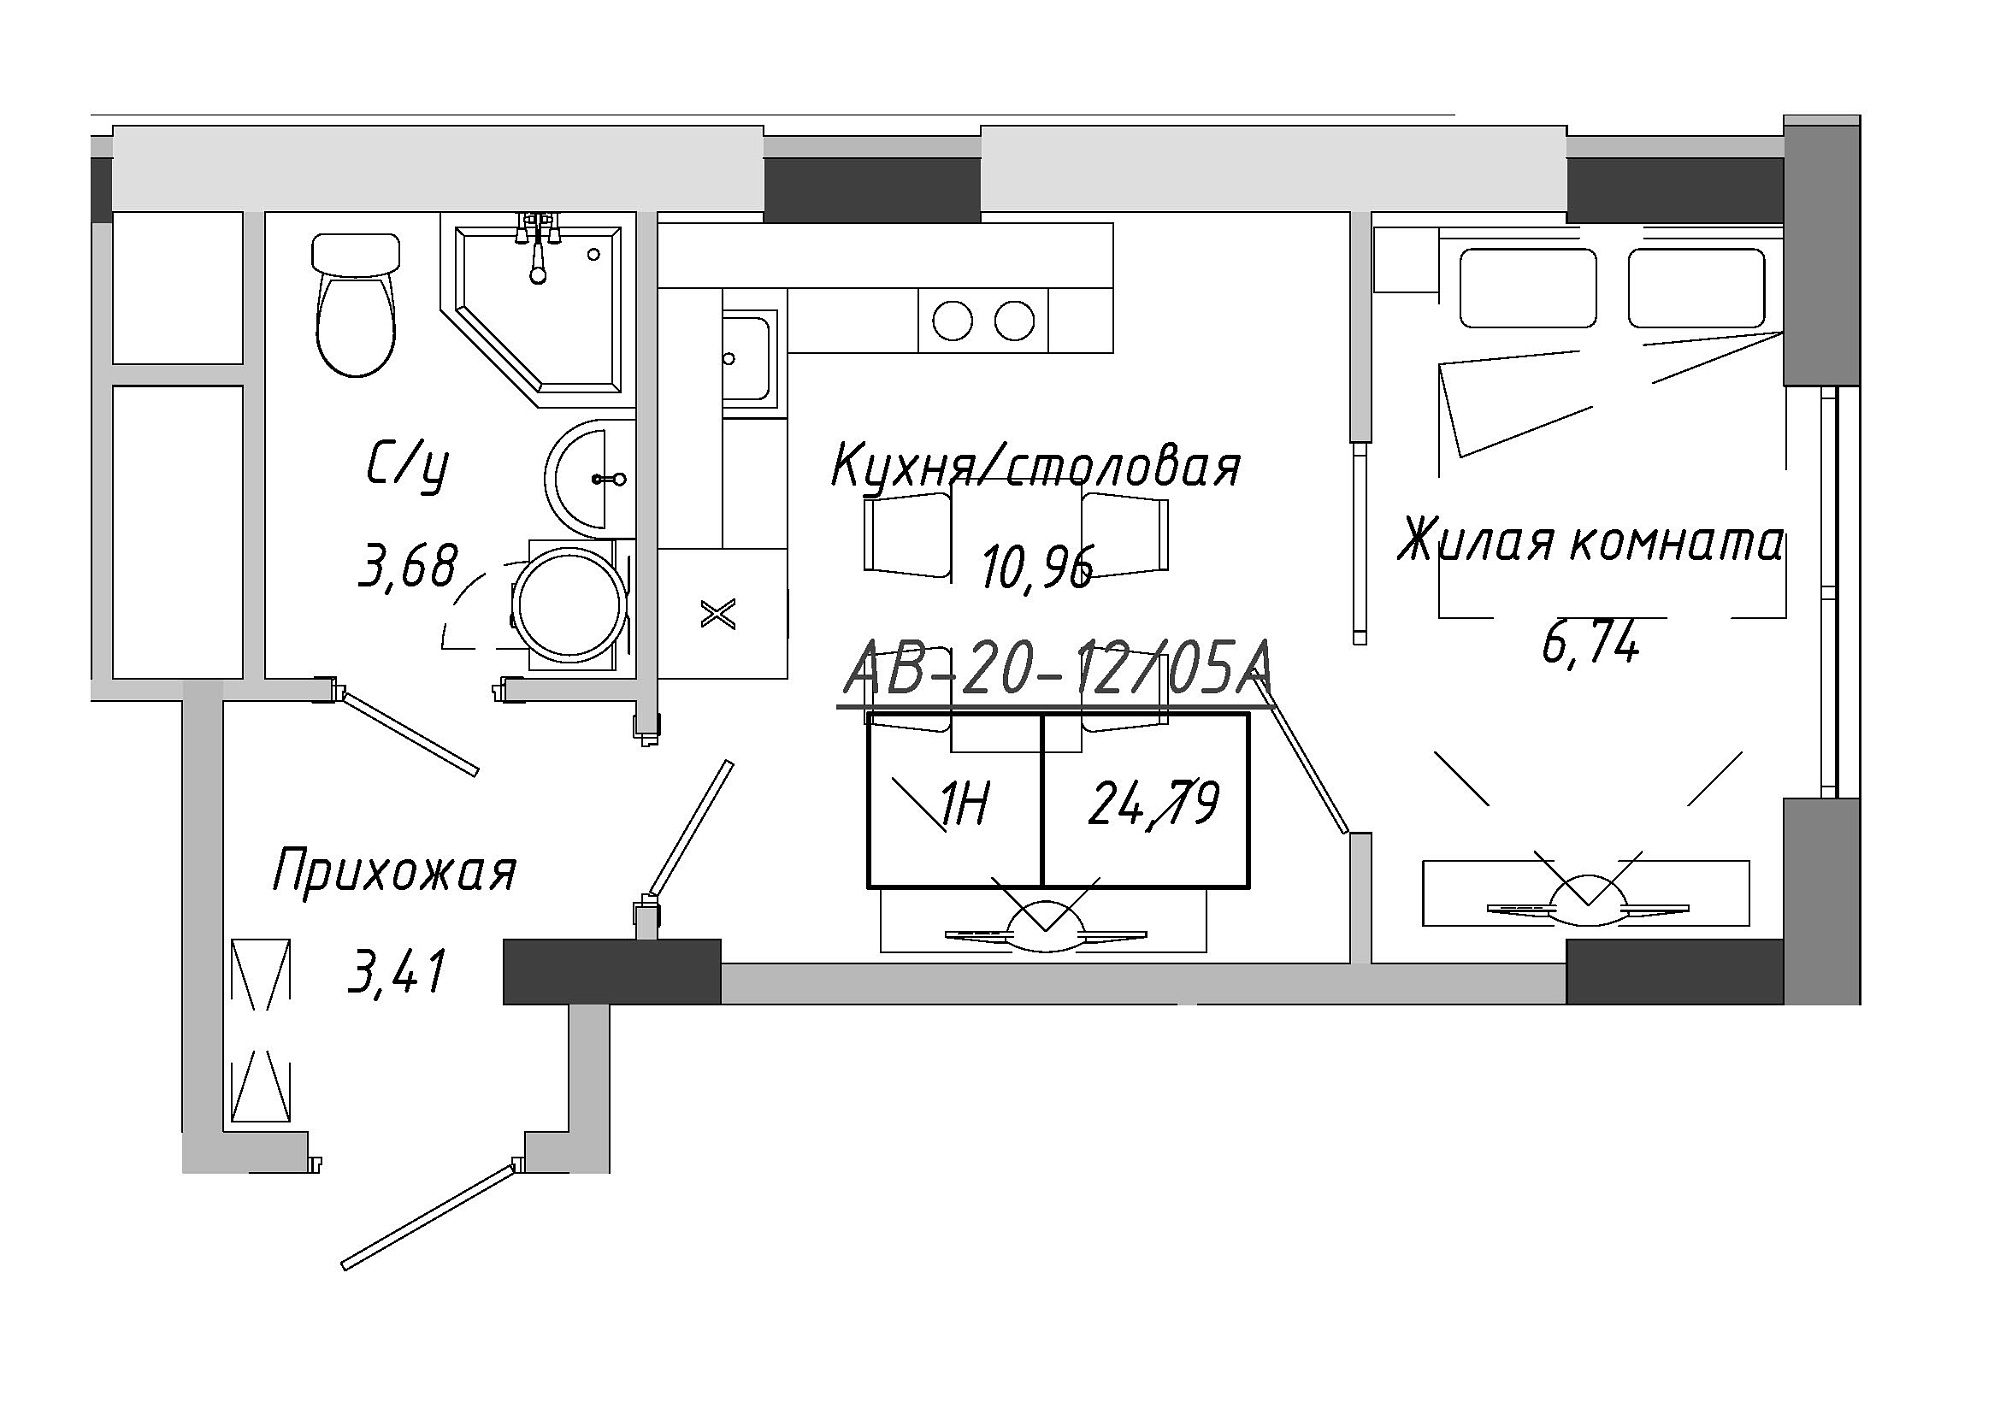 Планировка 1-к квартира площей 24.41м2, AB-20-12/0005а.